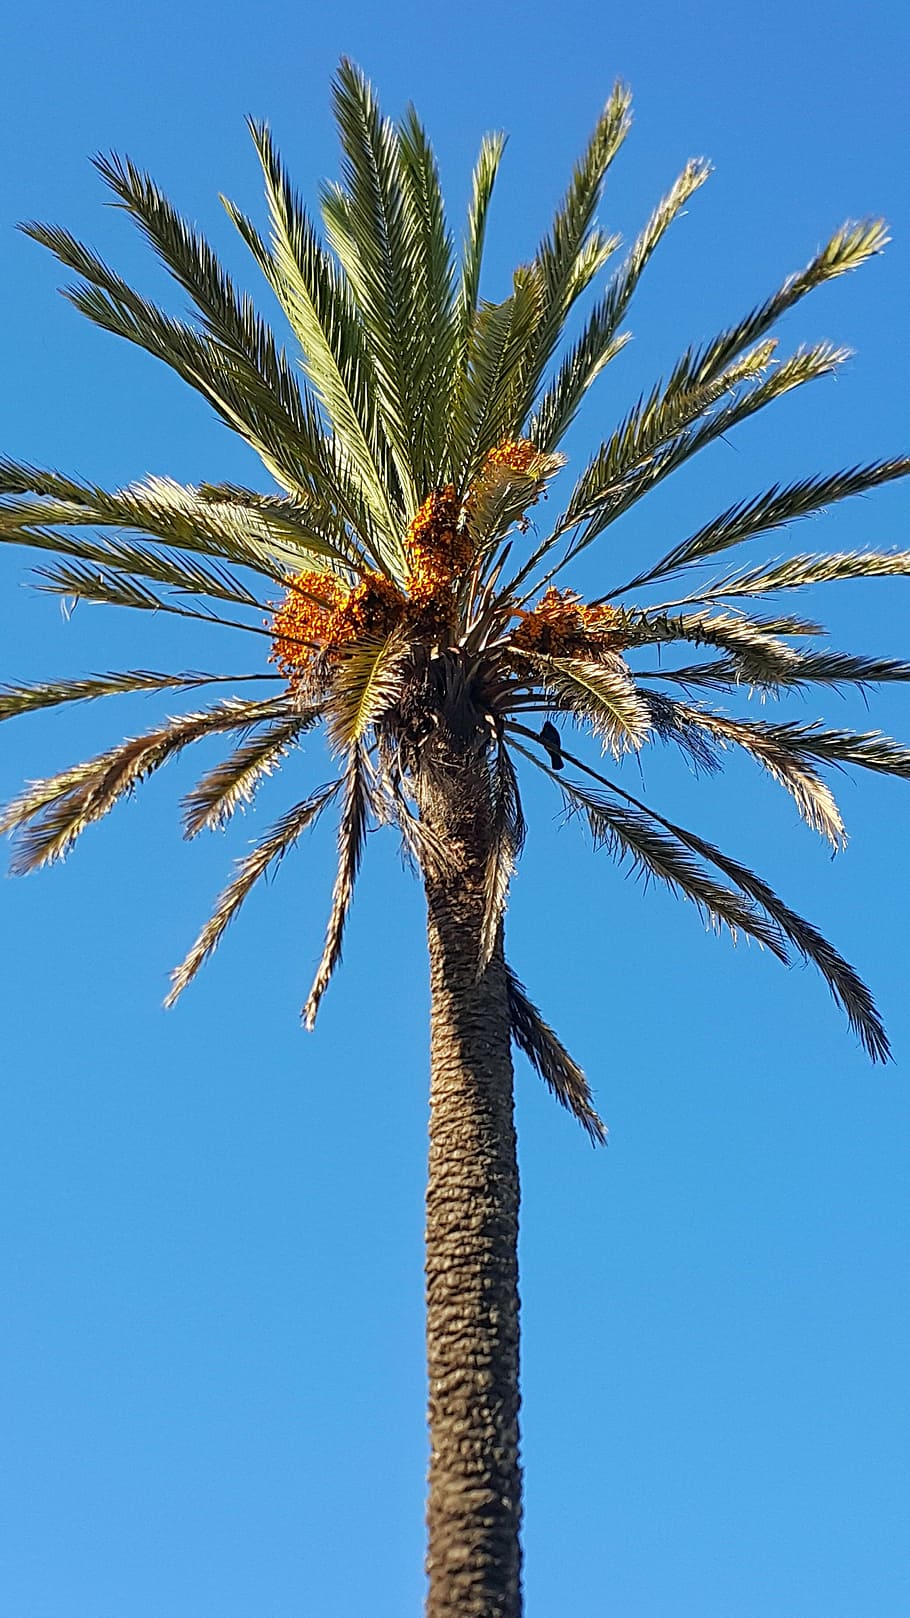 dates palm tree, blue sky, morocco, up high, straigth, palm leaves, palm tree, tropical climate, sky, tree